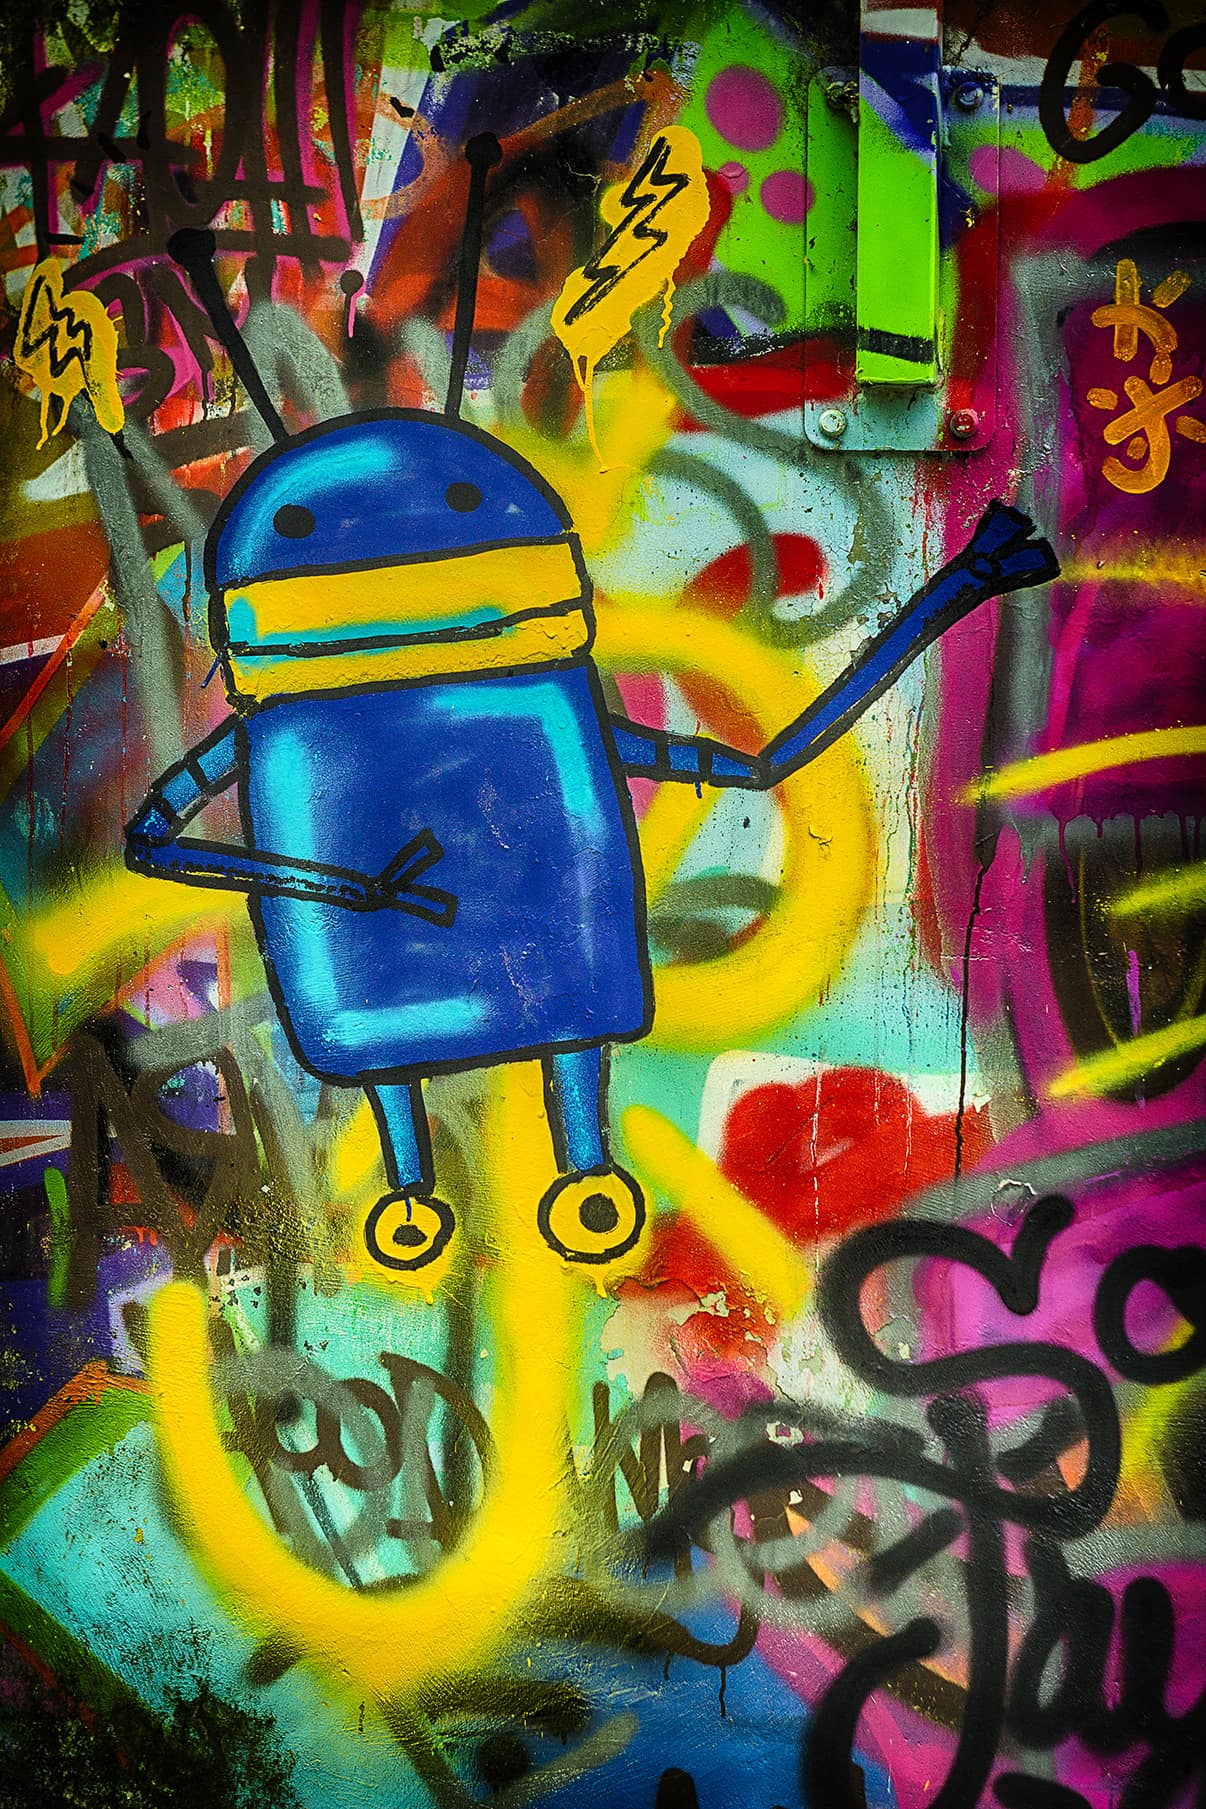 Sötétkék android robot színes graffiti